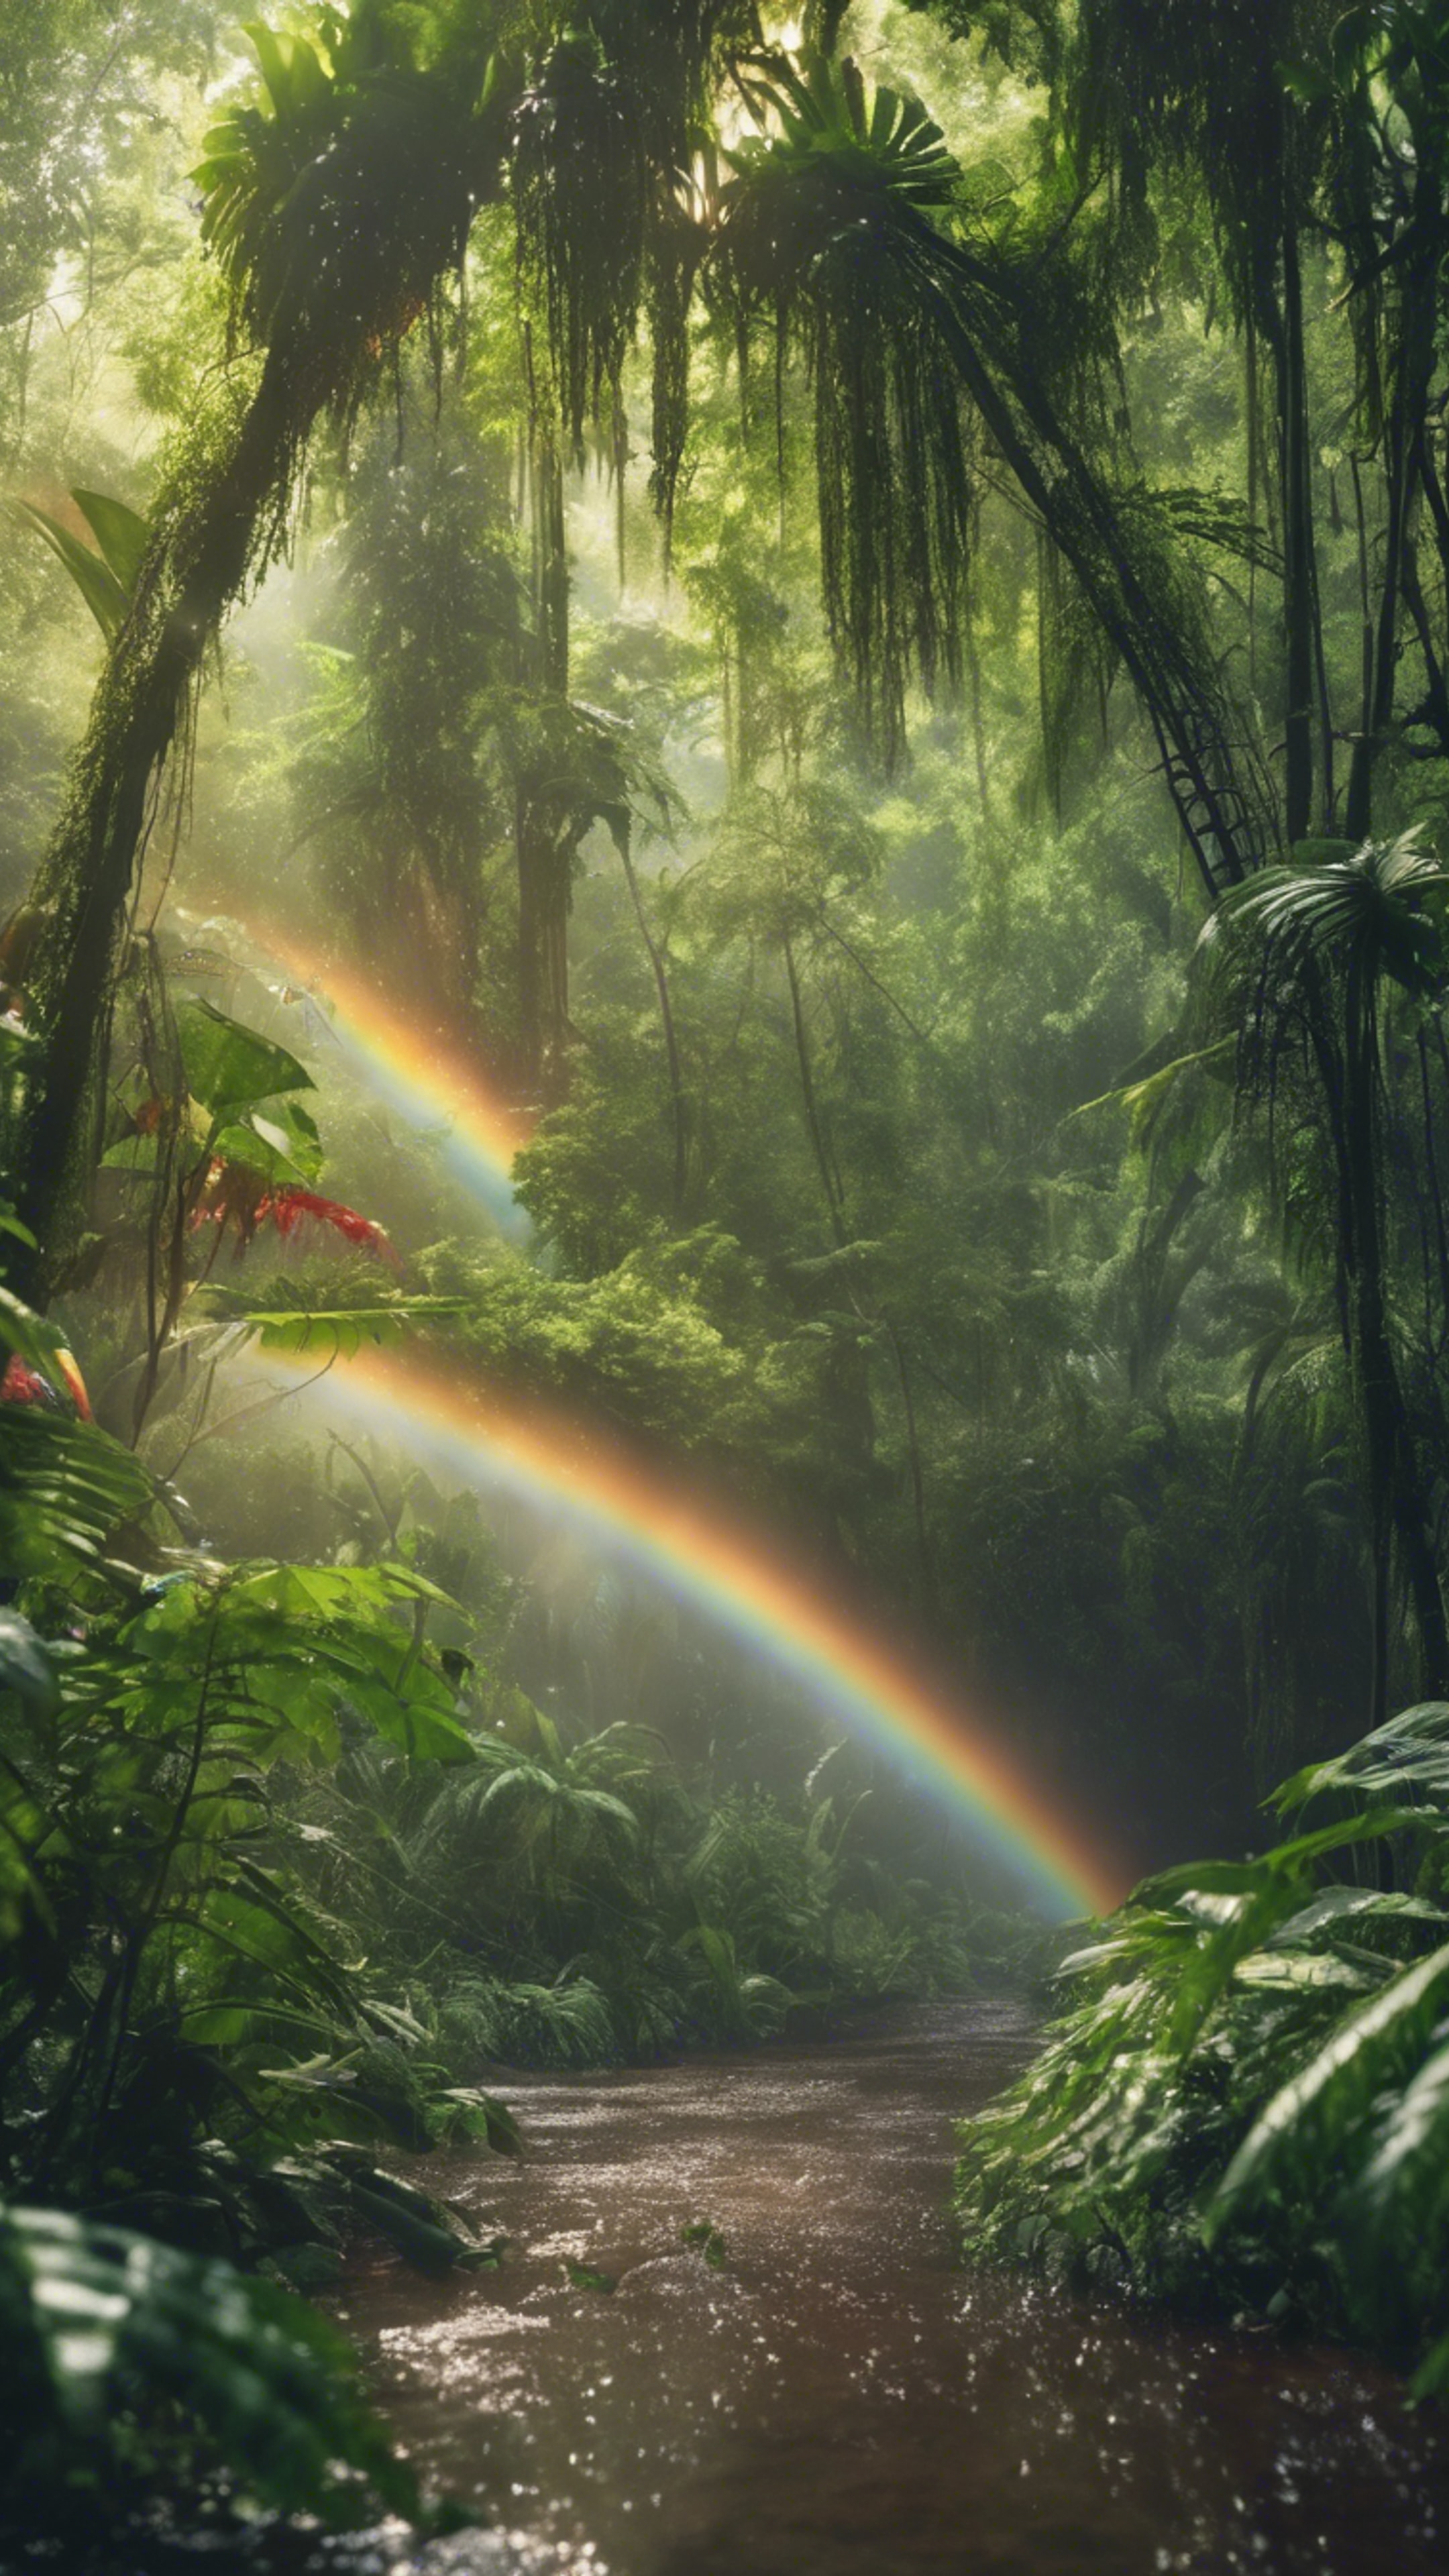 A lush, green rainforest glistening under a rainbow after a summer shower. Wallpaper[0e0a5e65f97649b38163]